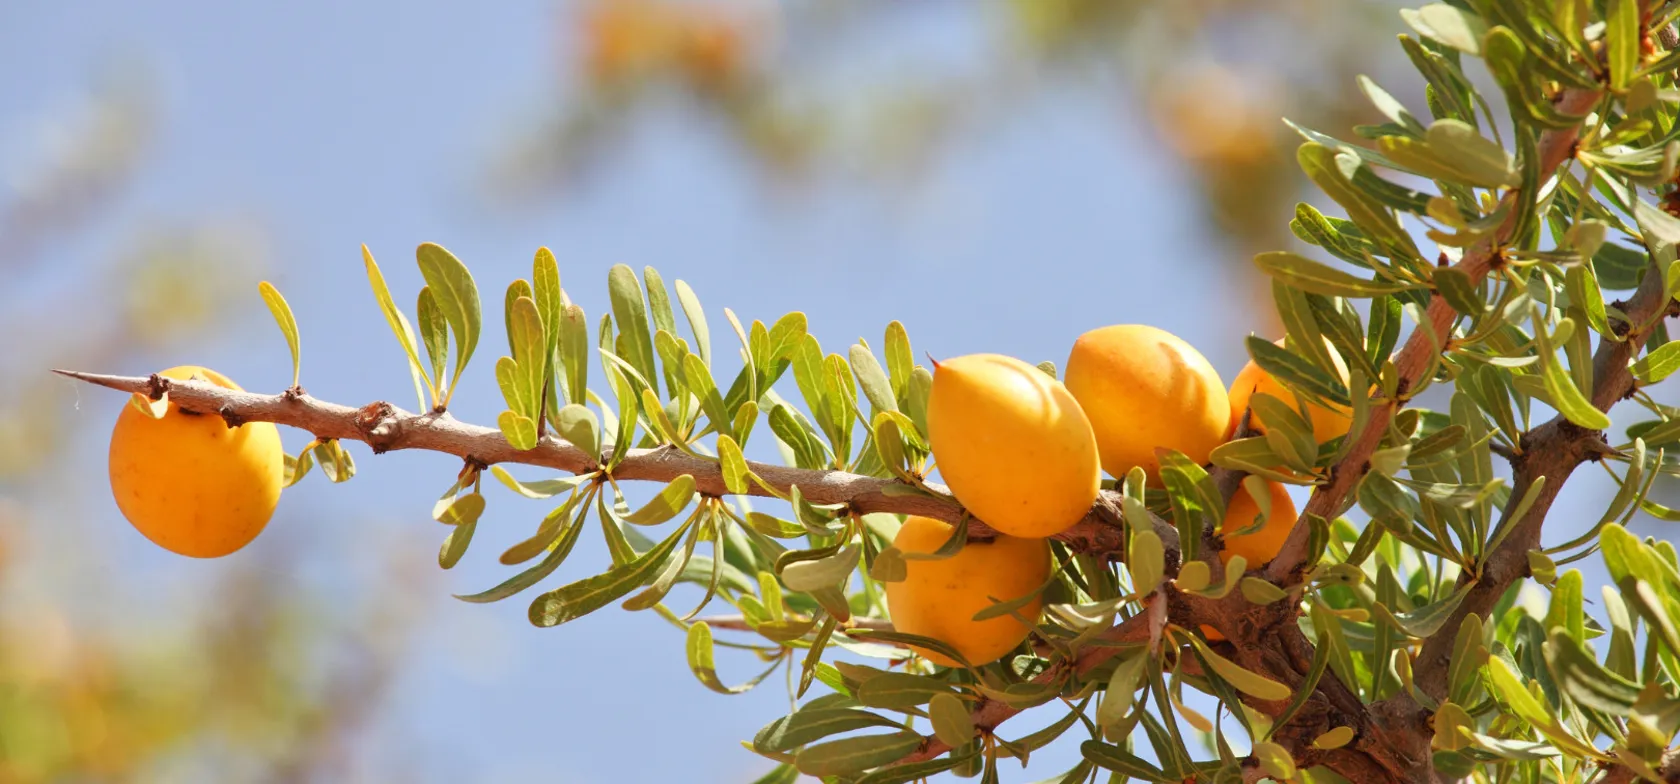 Olie fra argan-træets frugter er blevet en af vor tids mest eftertragtede ingredienser. Foto Viktors Farmor